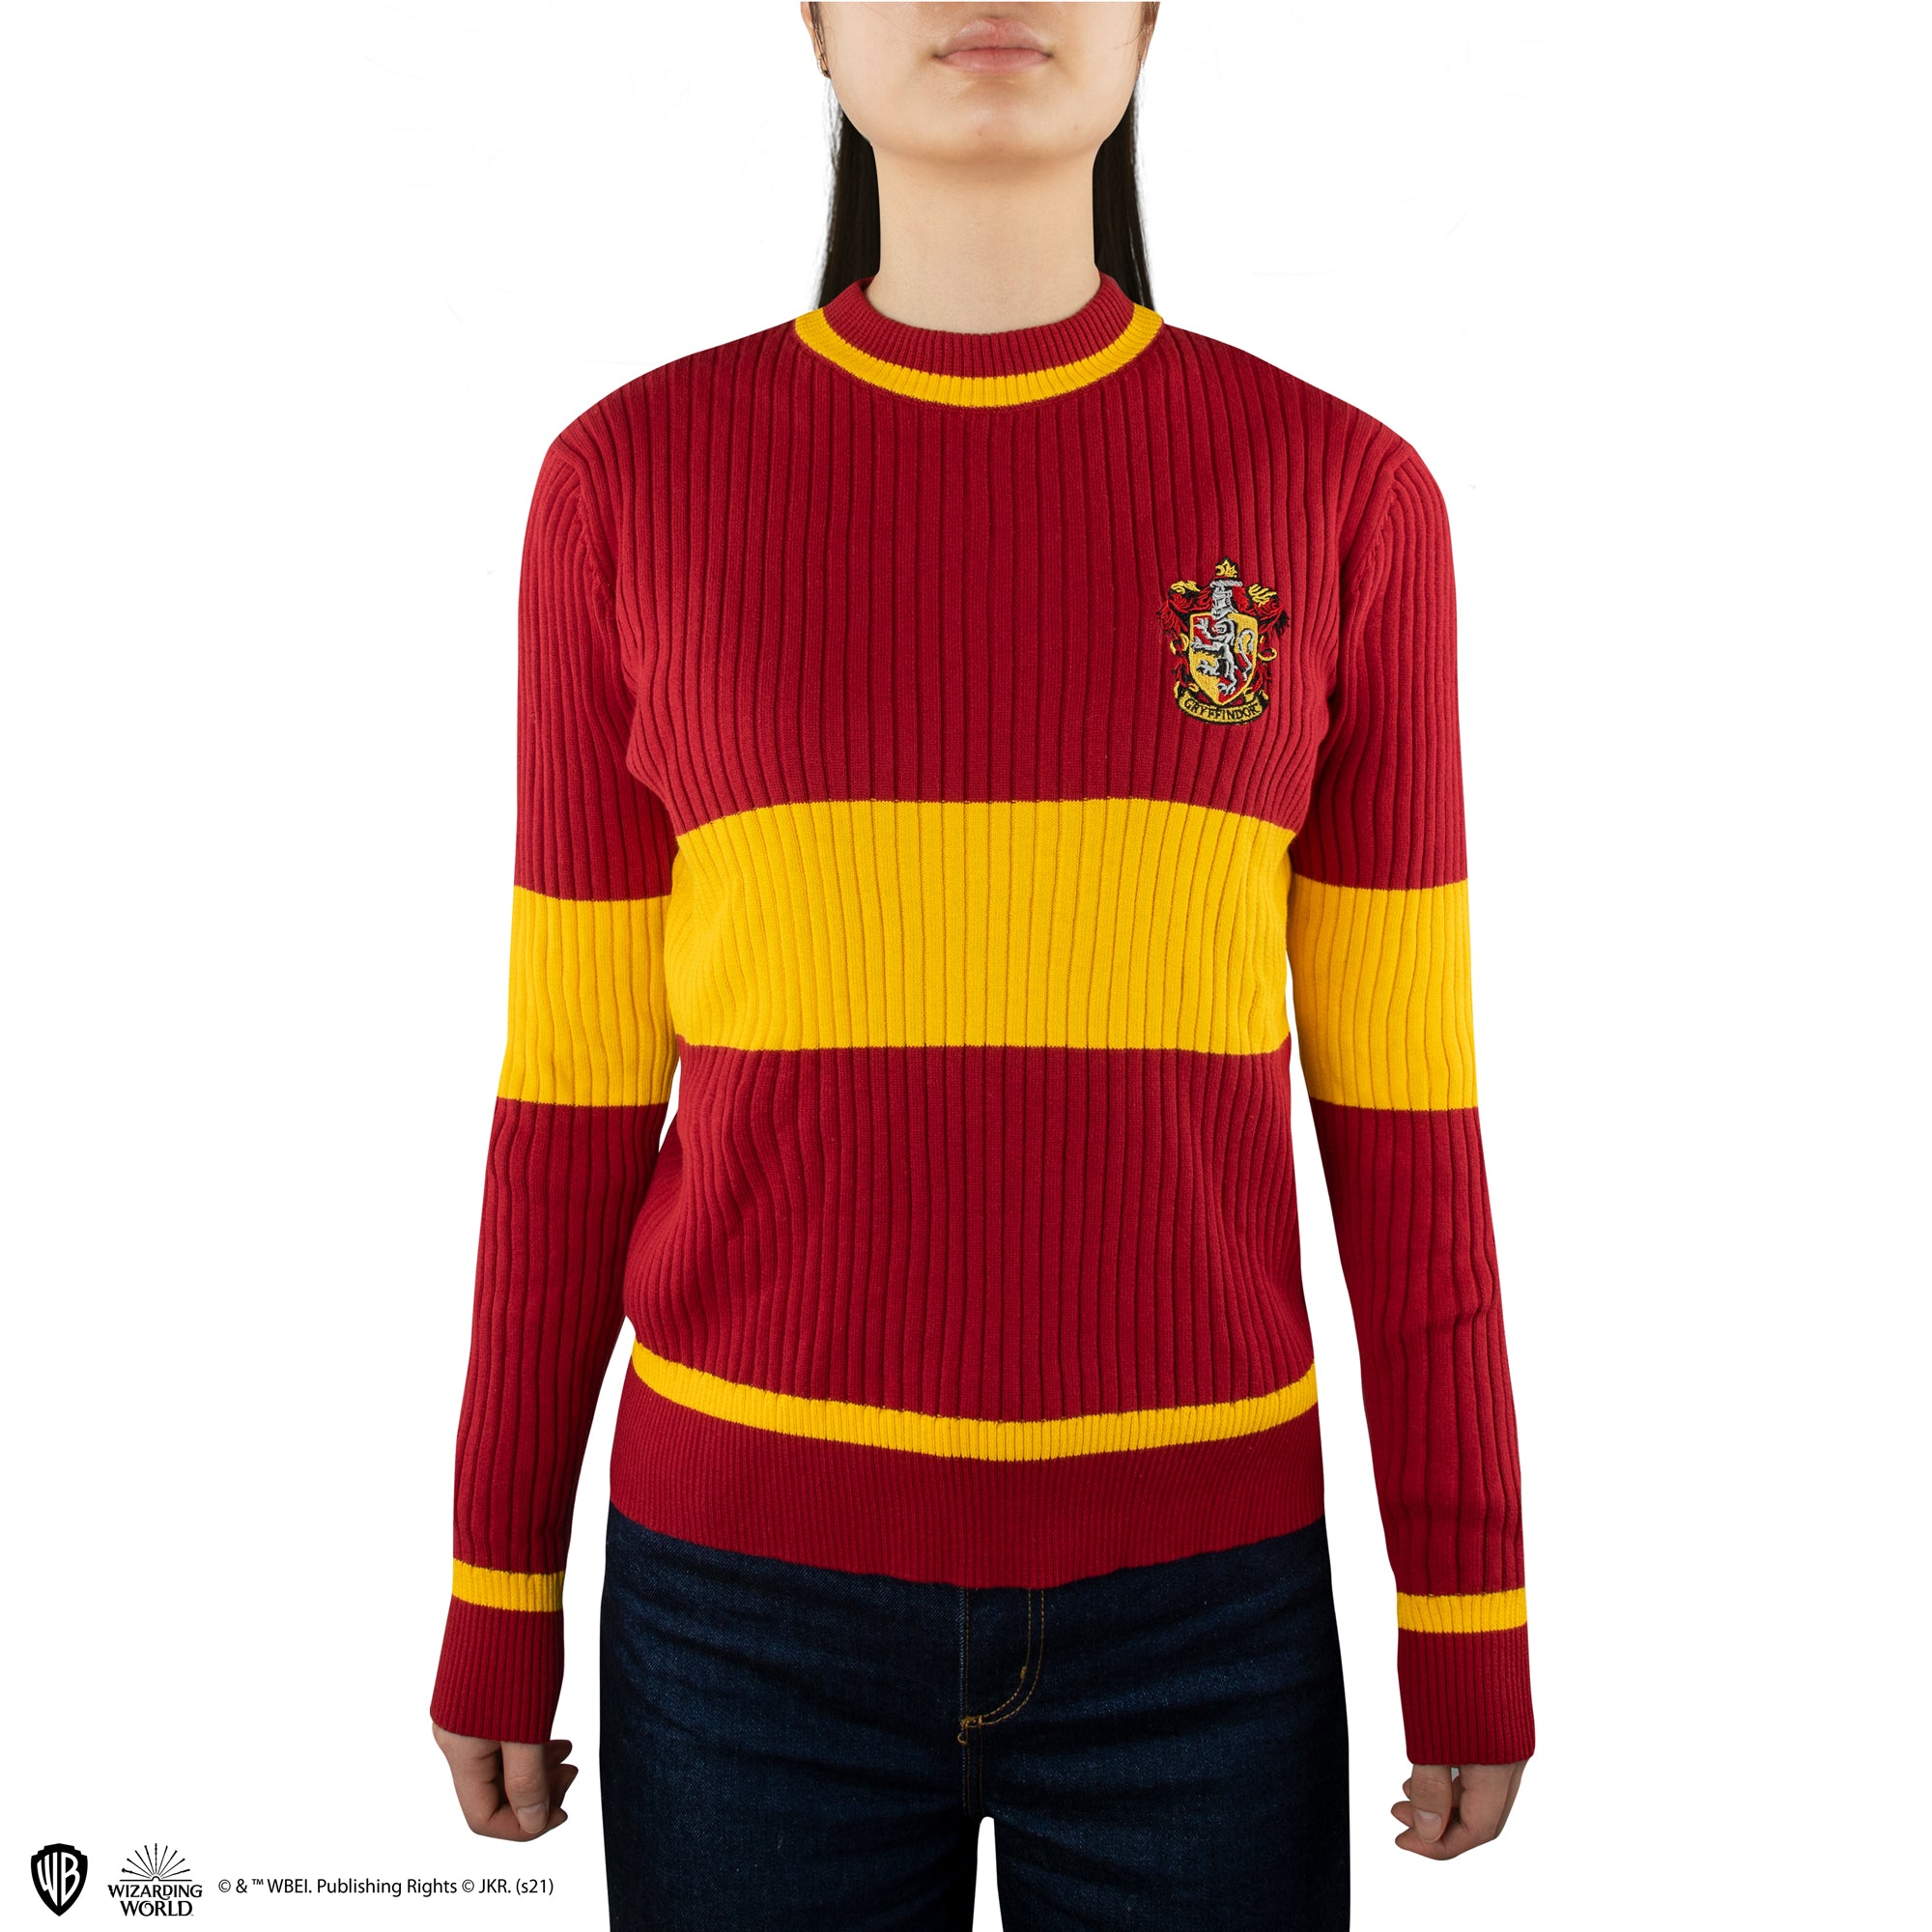 Sweater Quidditch Gryffindor Harry Potter Cinereplicas